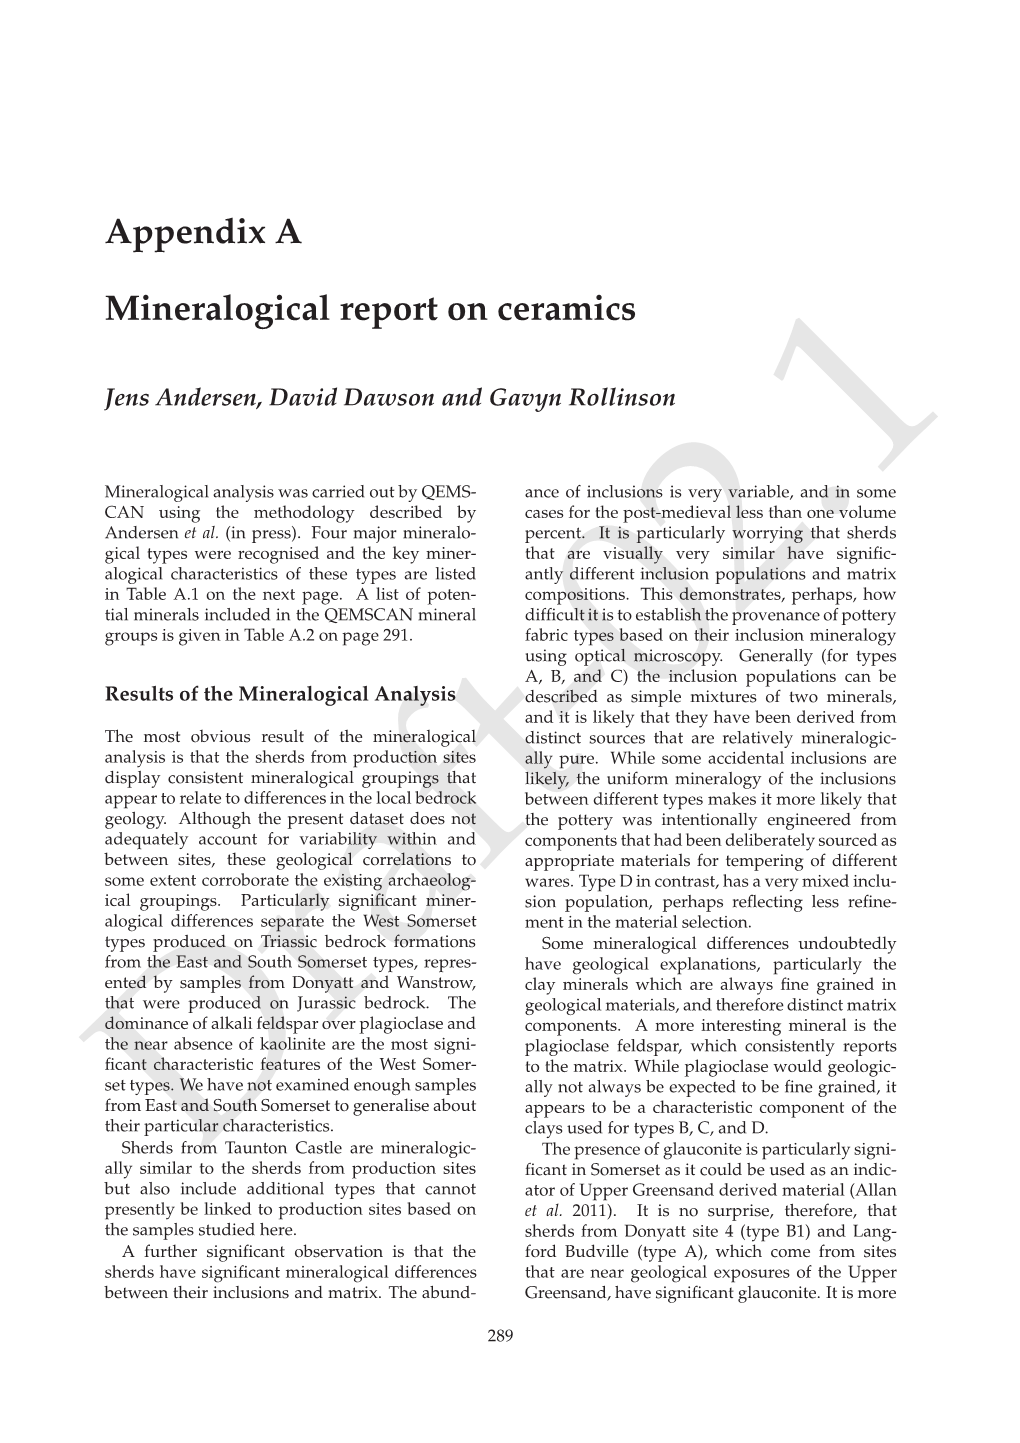 Appendix a Mineralogical Report on Ceramics